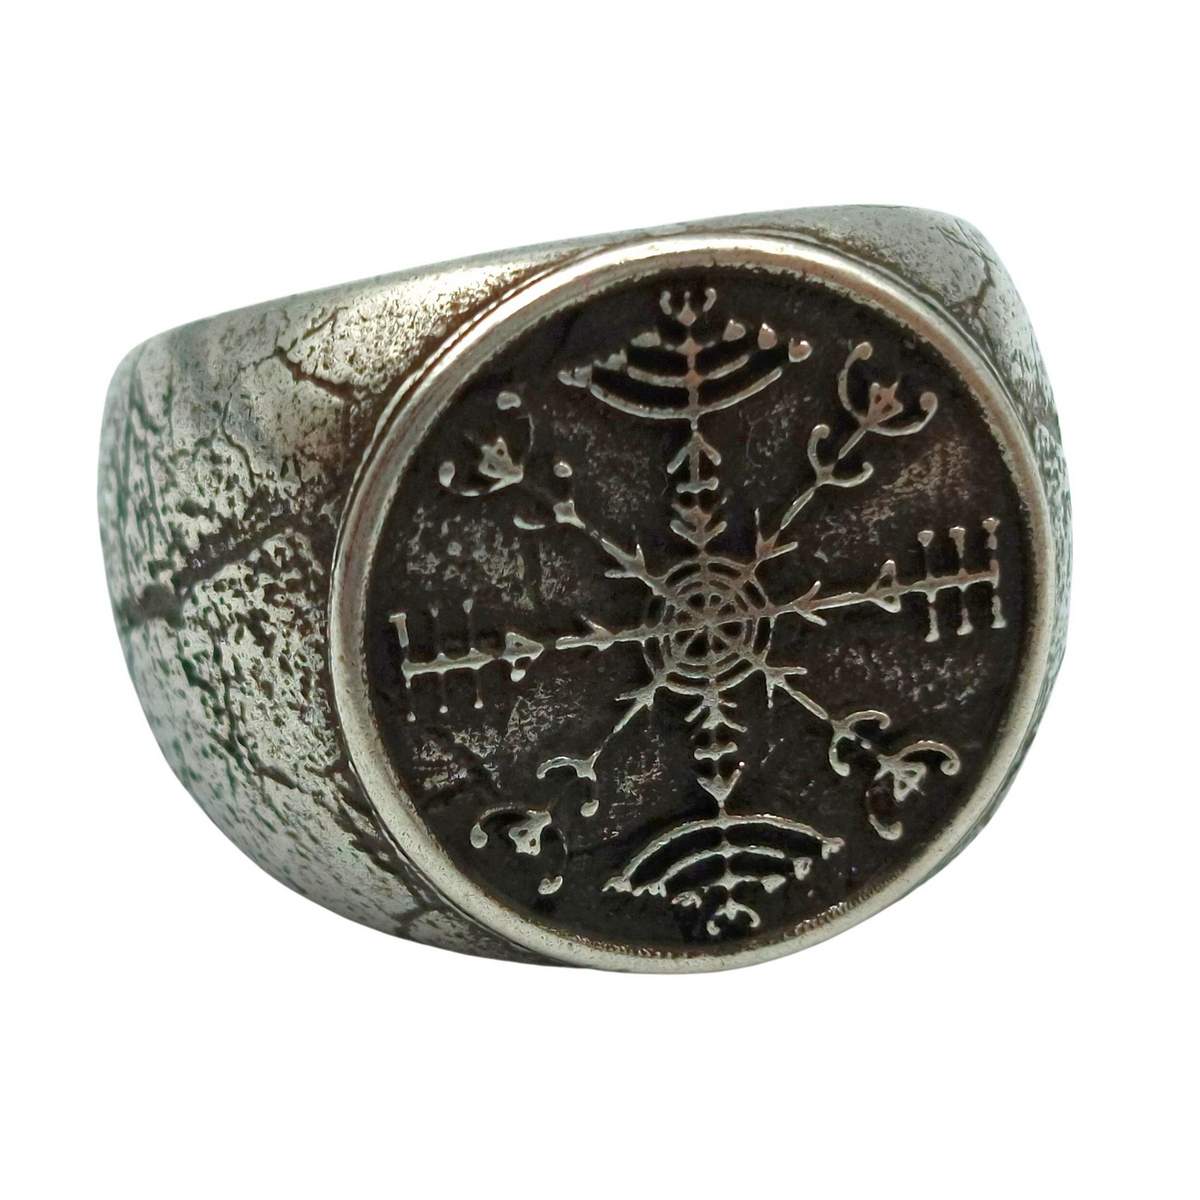 Veldismagn ring from bronze